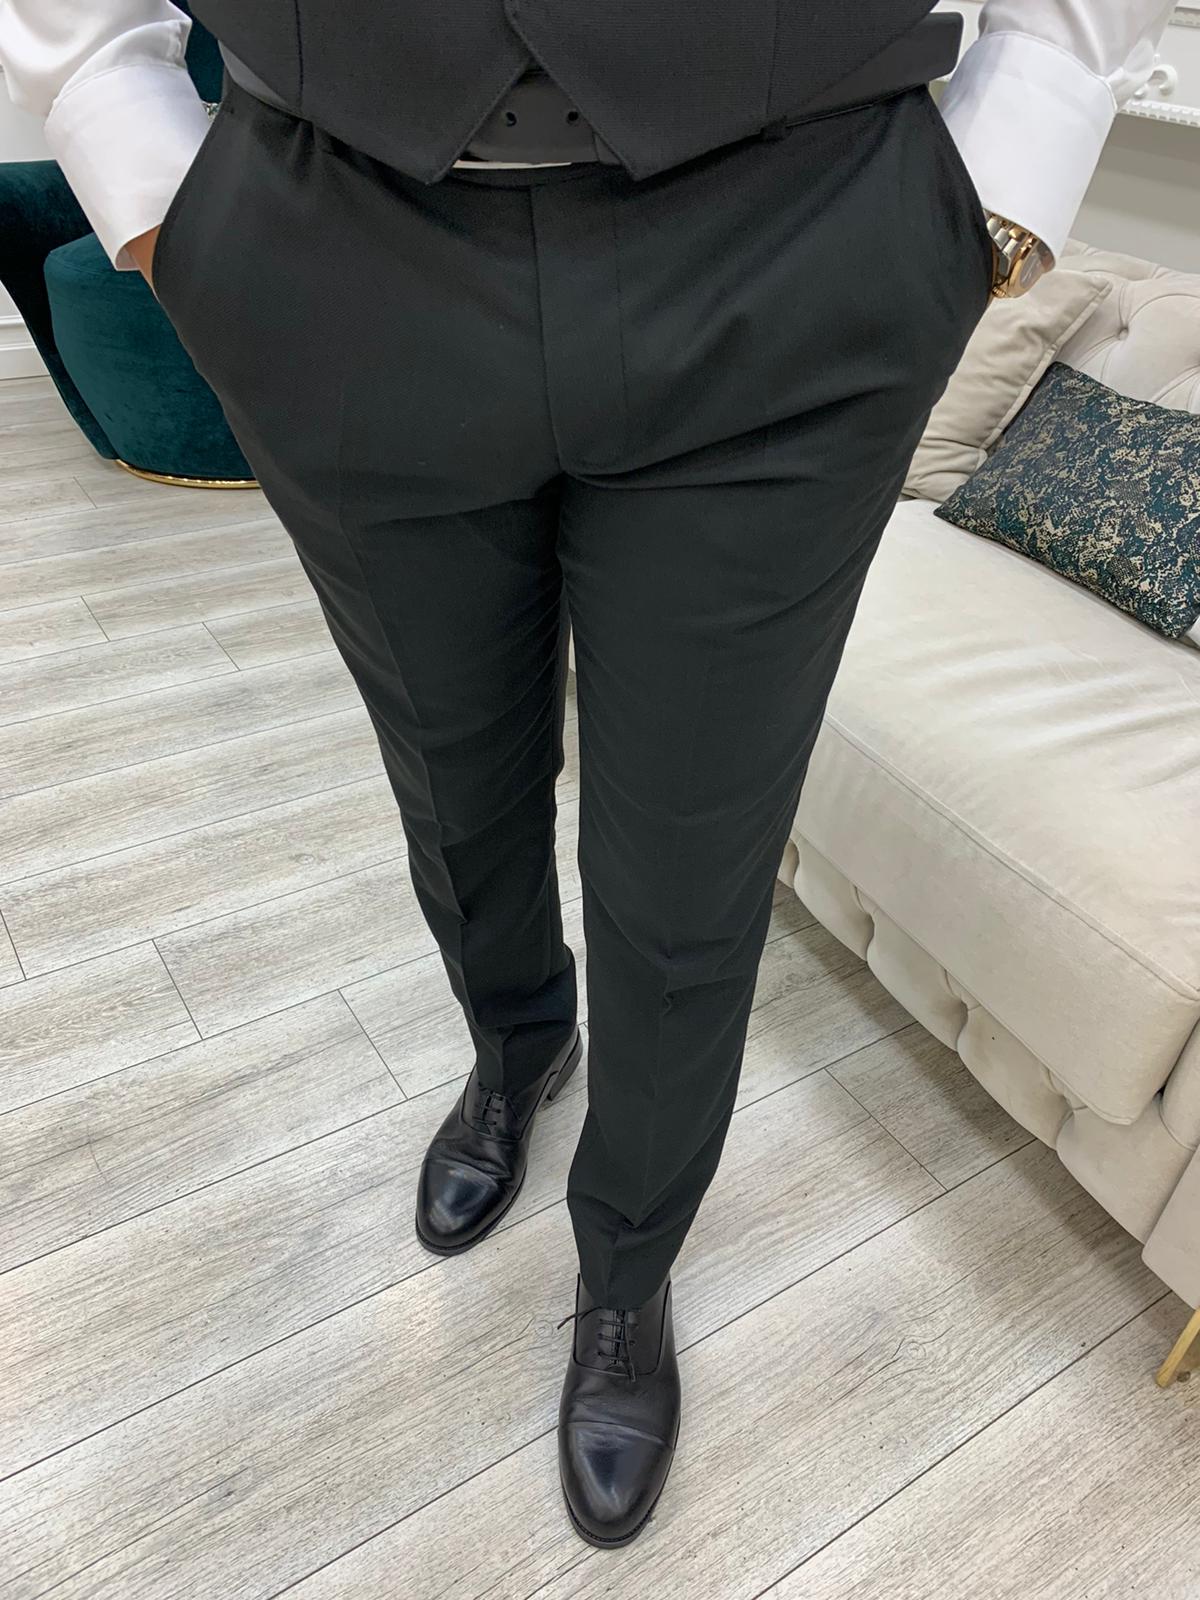 York Black Slim Fit Notch Lapel Suit